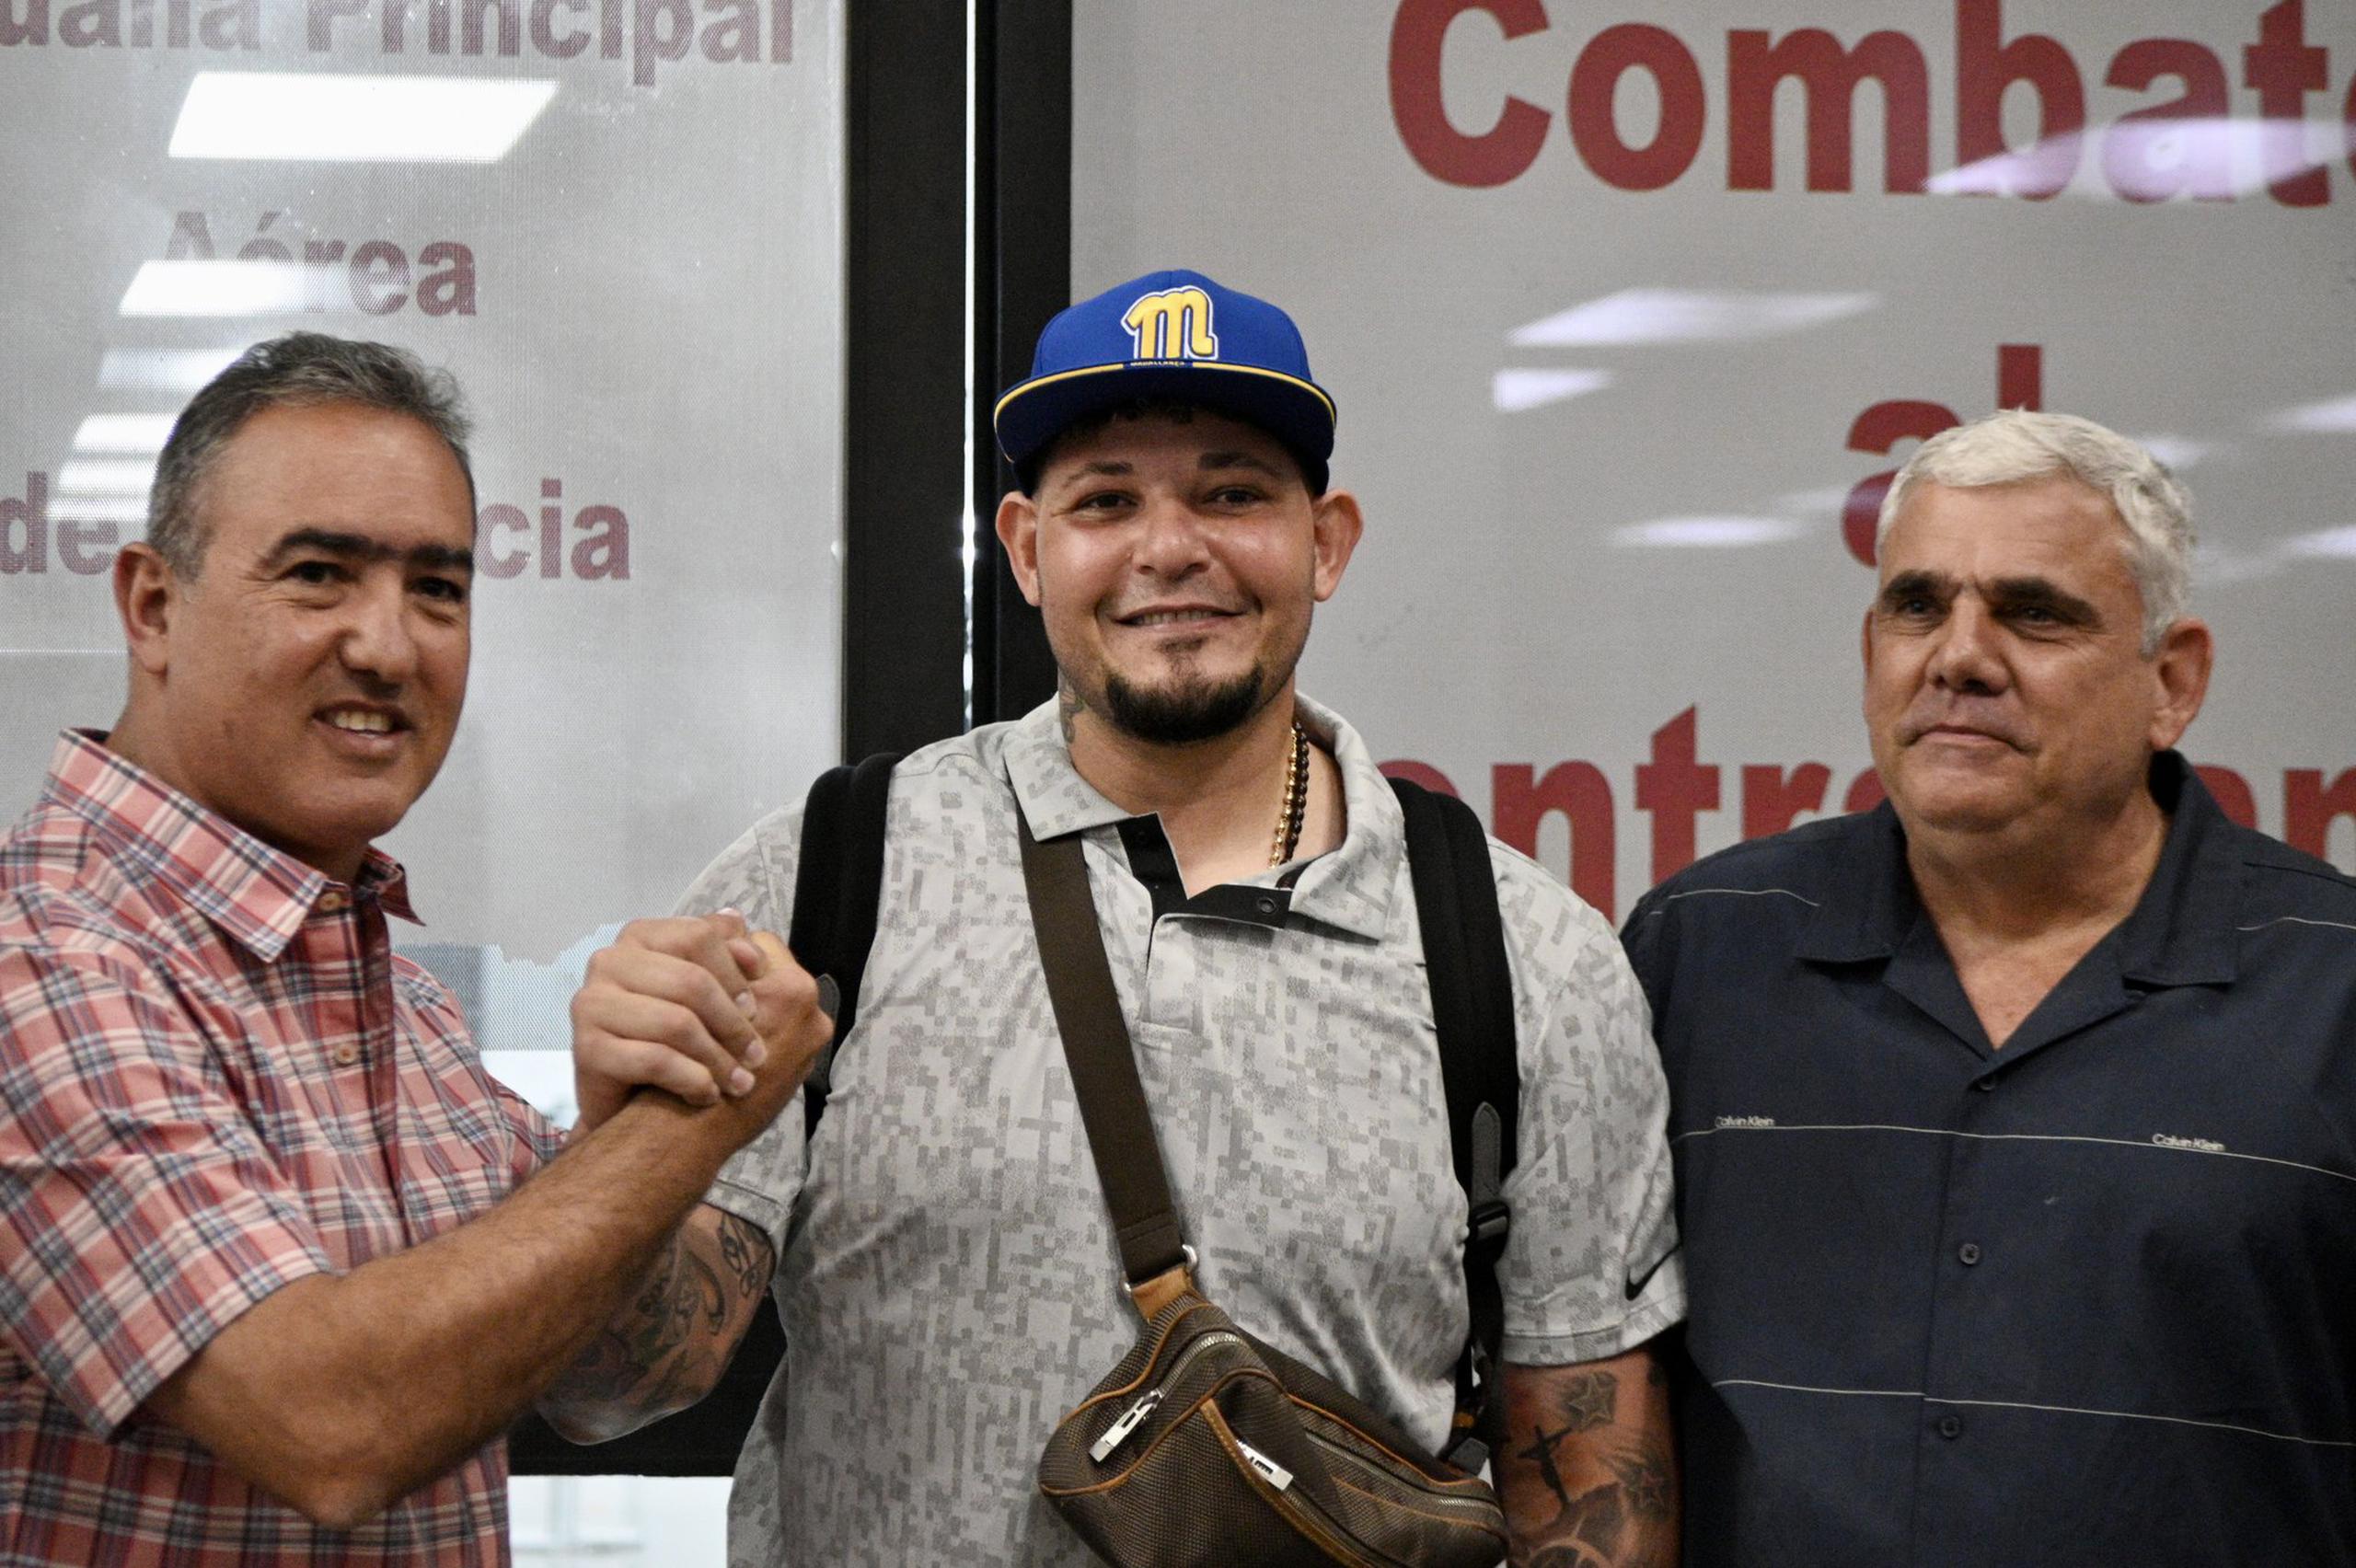 Desde la izquierda, Luis Blasini, gerente general, Yadier Molina, dirigente, y Maximiliano Branger, presidente de los Navegantes de Magallanes. La escena se dio el viernes en la llegada de Molina a Valencia, Venezuela.